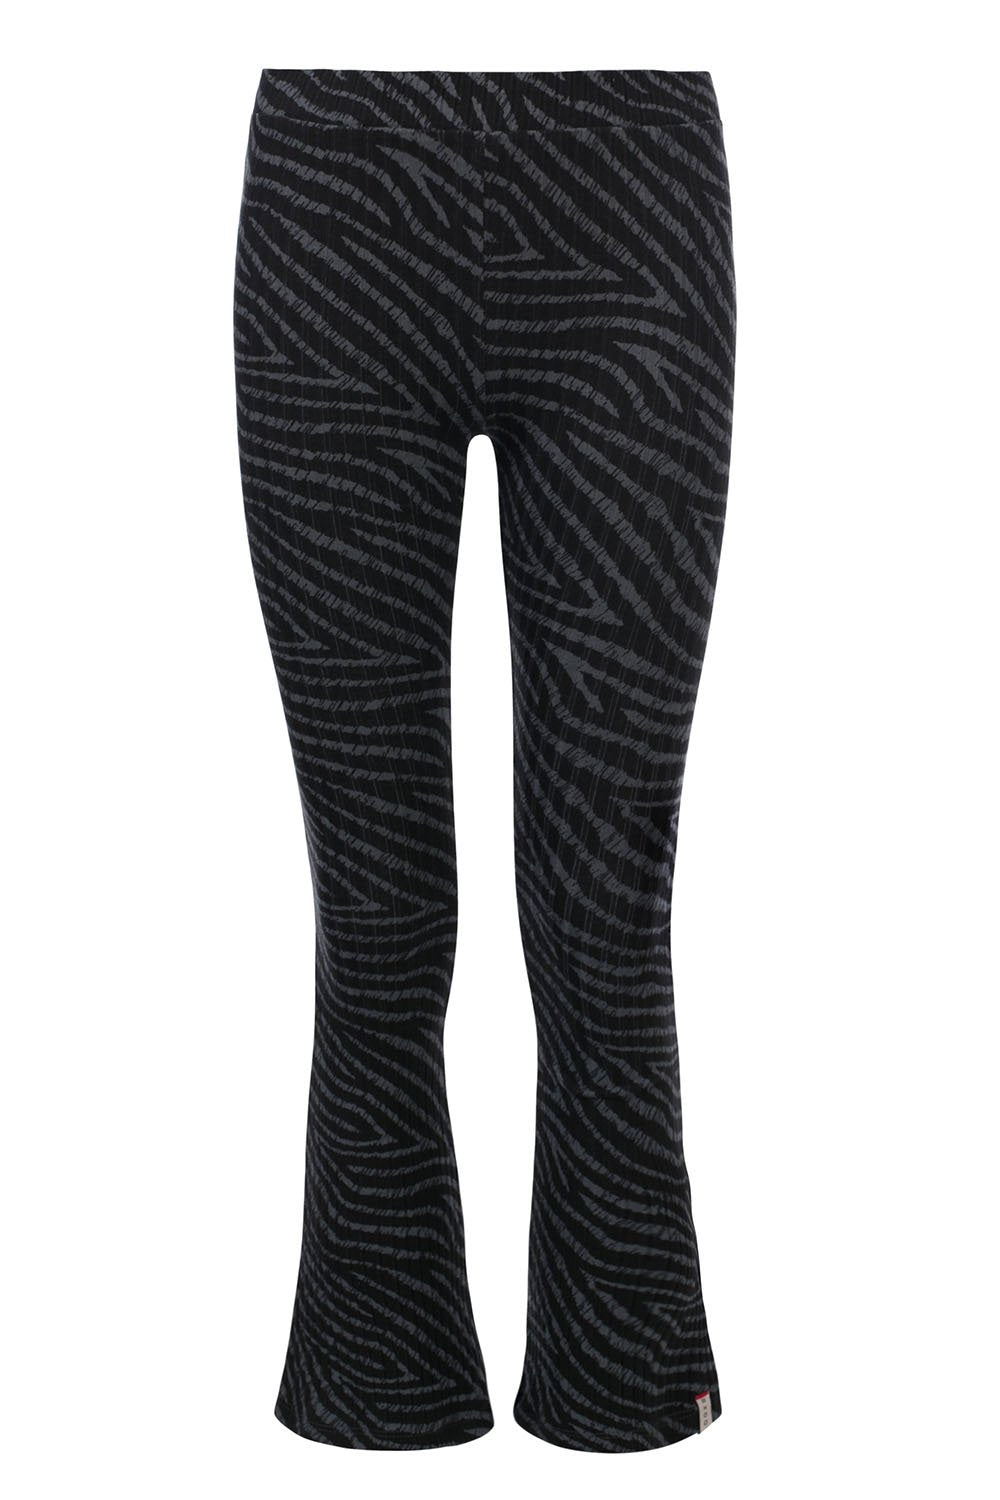 Meisjes 10Sixteen Tie dye flare pants van LOOXS 10sixteen in de kleur stormy zebra in maat 176.